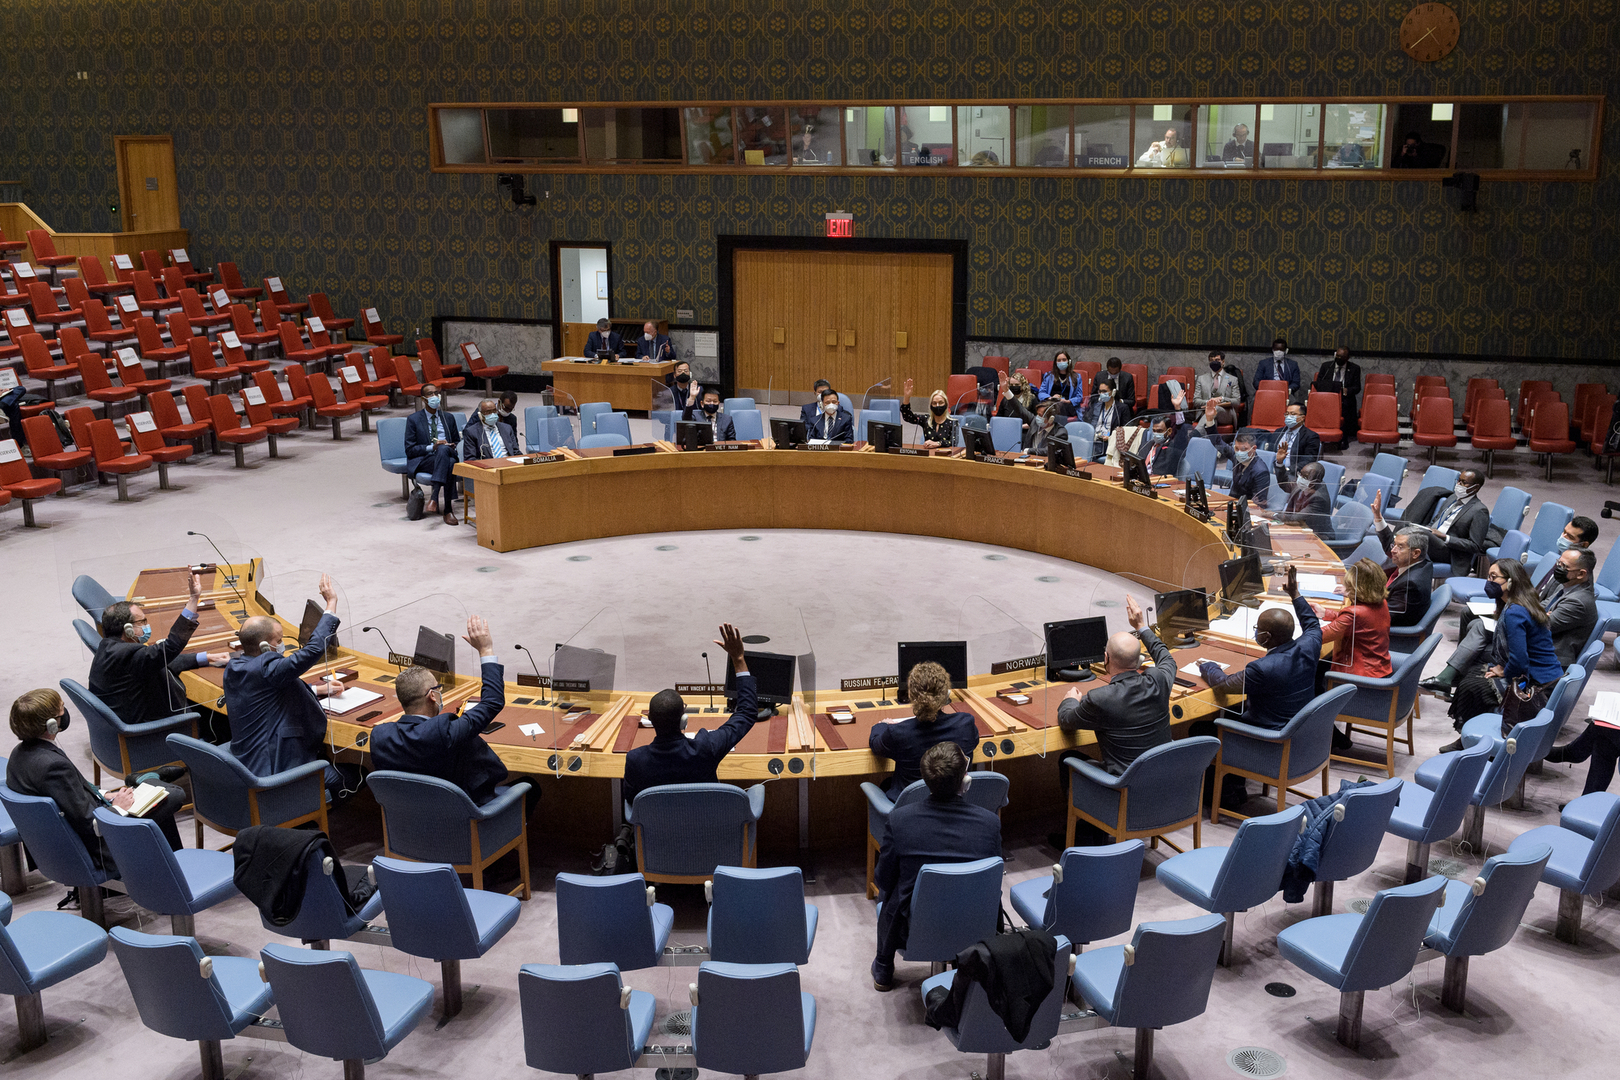 الإمارات تطلب عقد جلسة لمجلس الأمن الدولي وإدانة هجمات الحوثيين بشكل قاطع